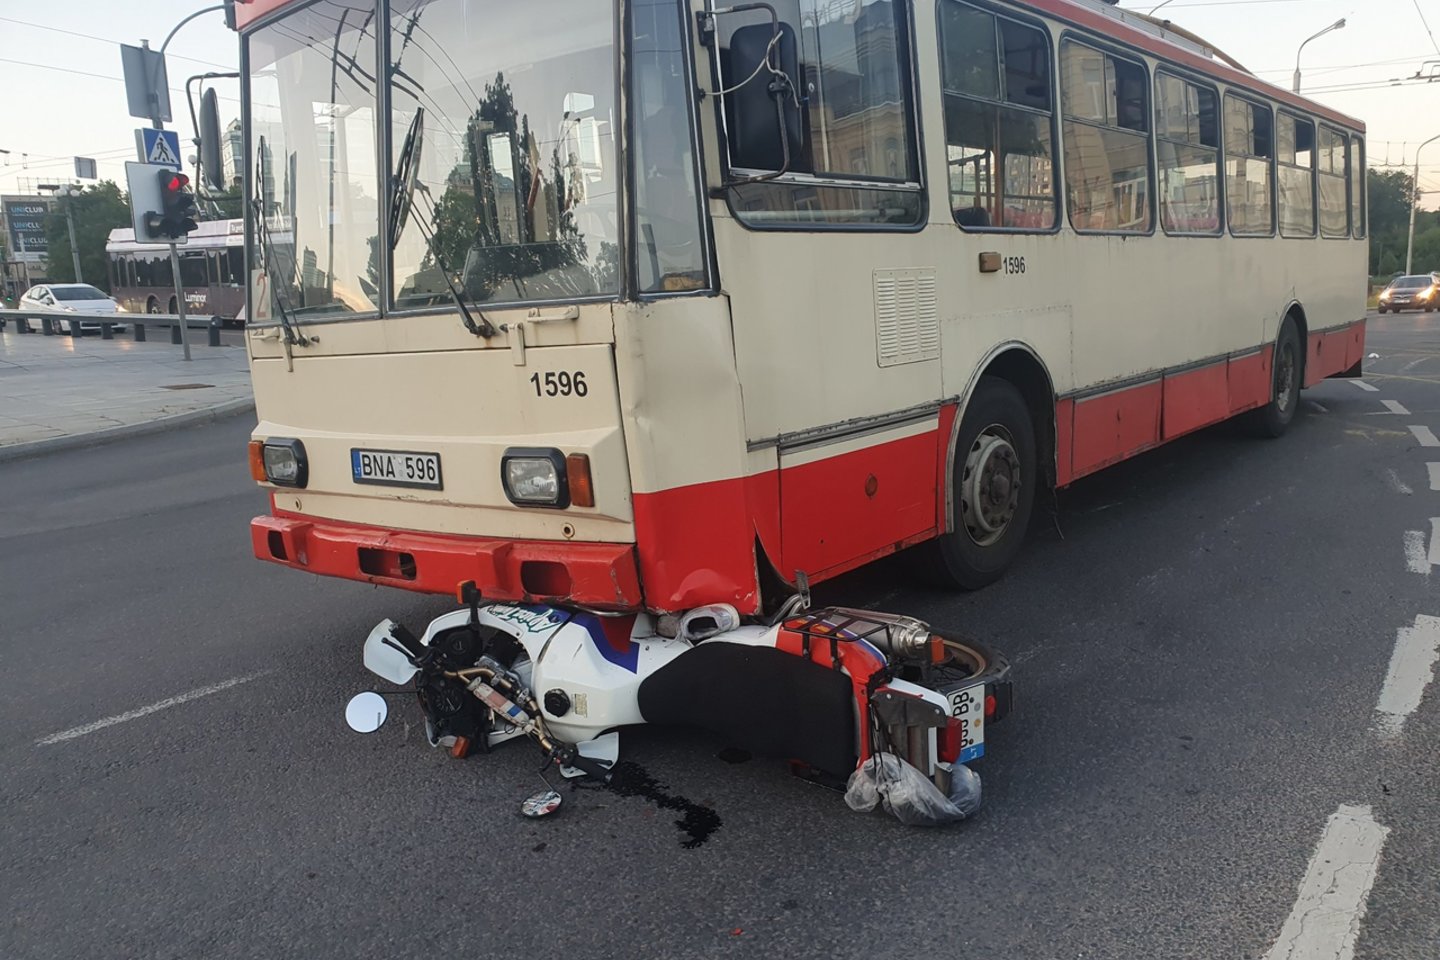  Avarija Vilniaus centre: motociklas atsidūrė po troleibusu, yra nukentėjusių.<br> Įvykio liudininko nuotr.